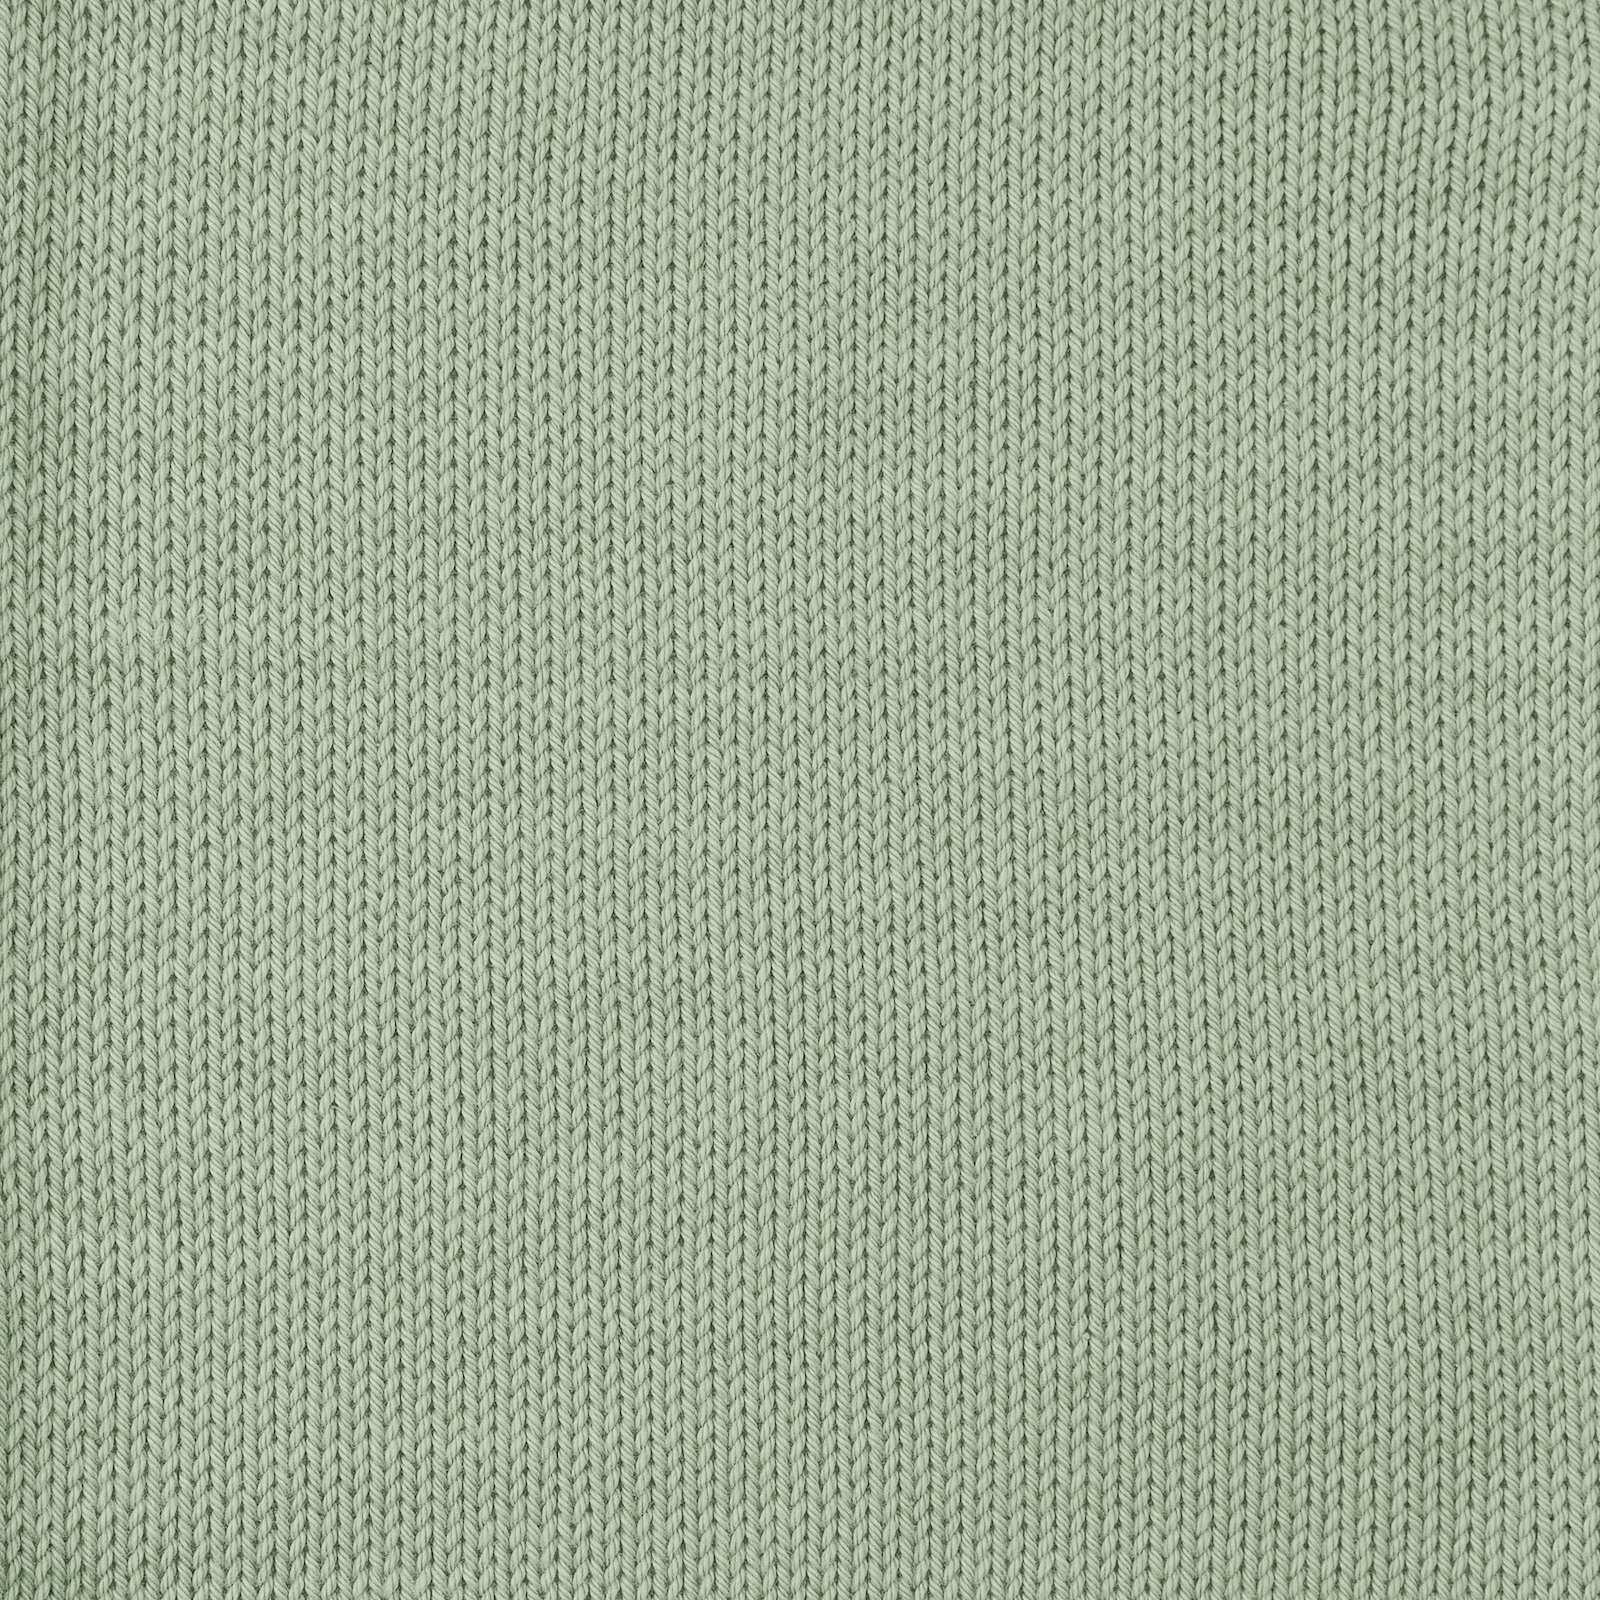 FRAYA, 100% cotton yarn "Colourful", blue agave 90060090_sskit